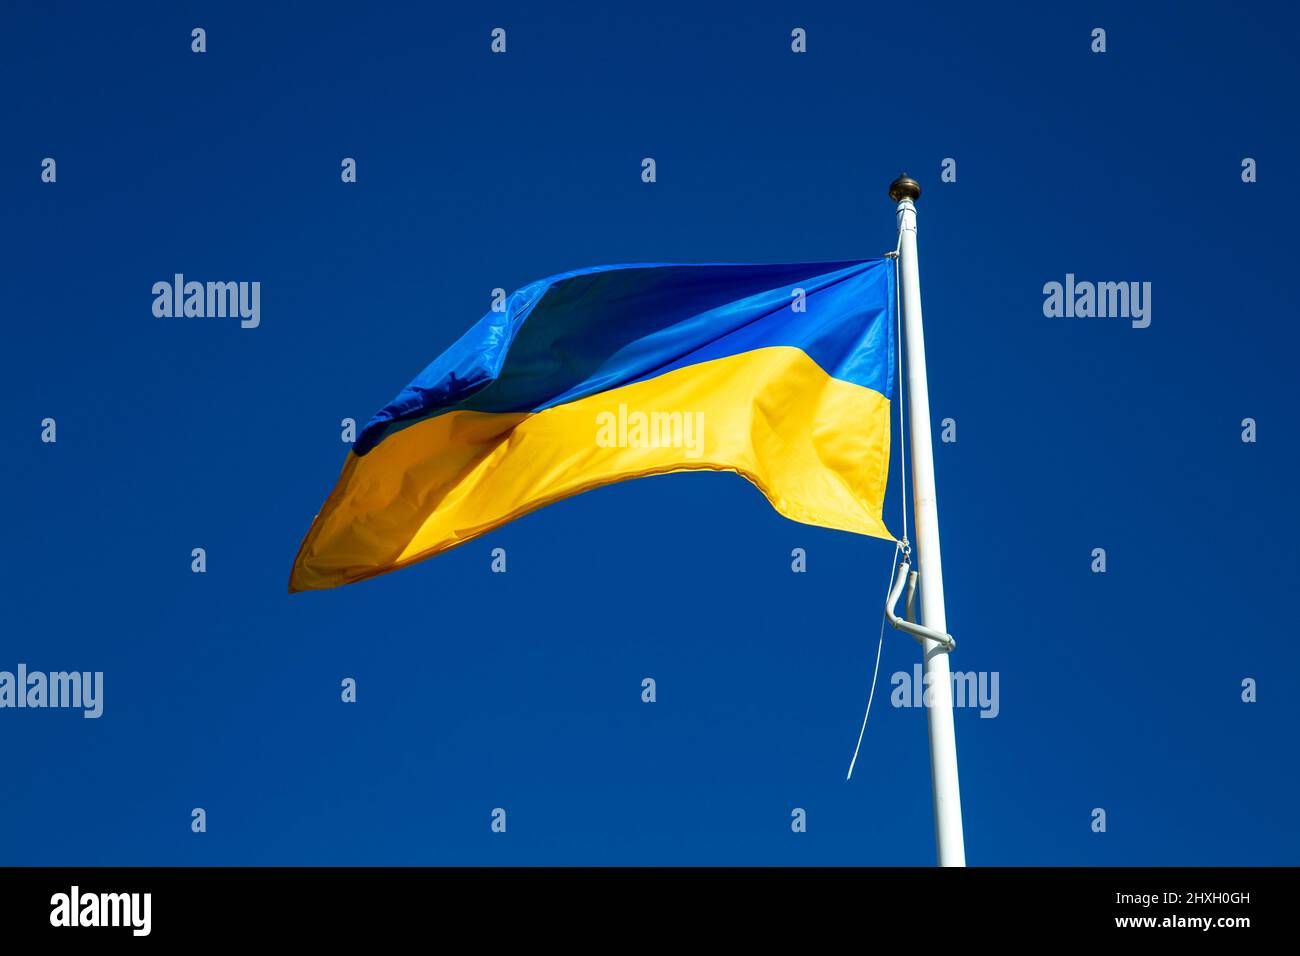 Ukrainian flag against a blue sky Stock Photo